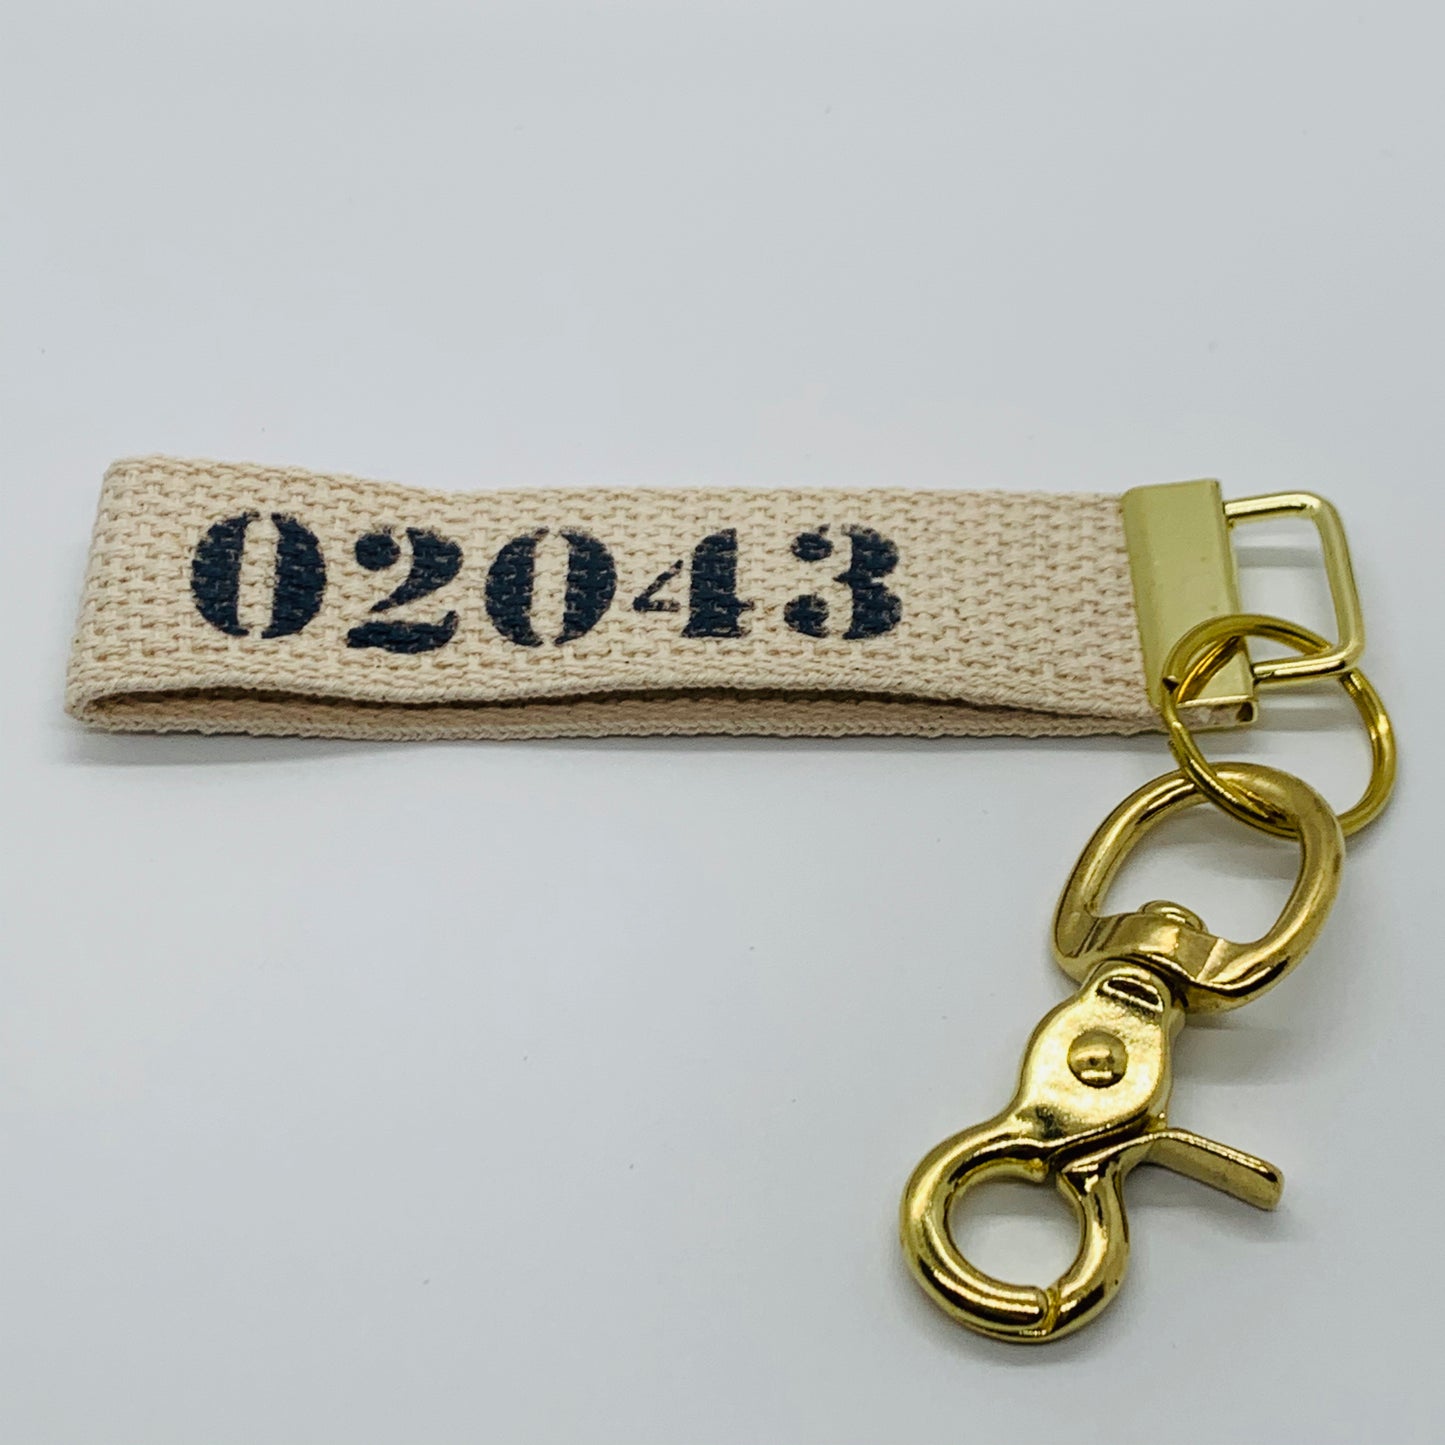 02043 Navy Keychain